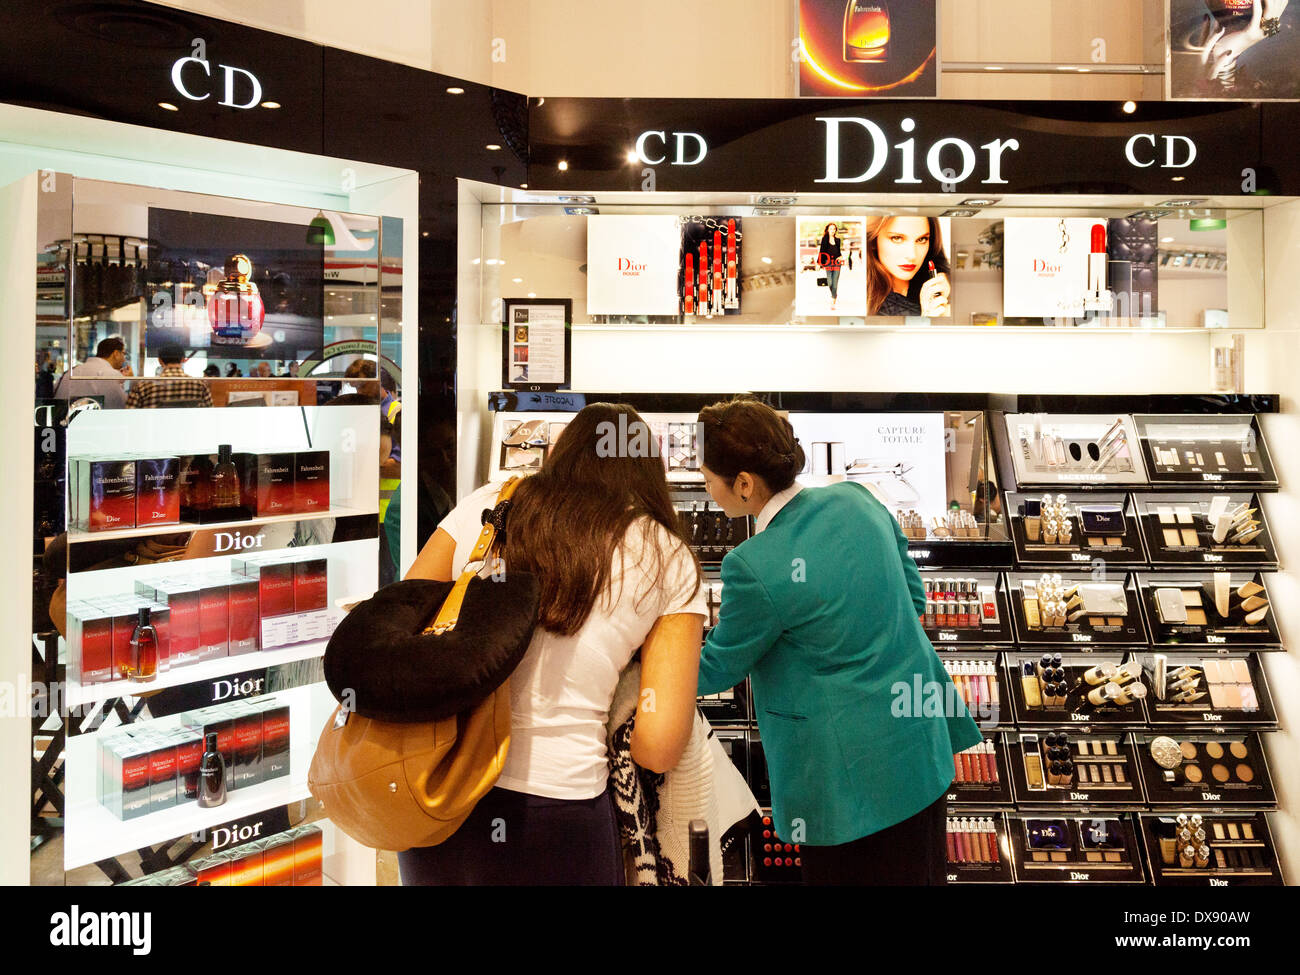 Frau kaufen, Dior Kosmetik, Duty Free Shop, Flughafen Dubai Abflughalle, VAE, Vereinigte Arabische Emirate Naher Osten Stockfoto